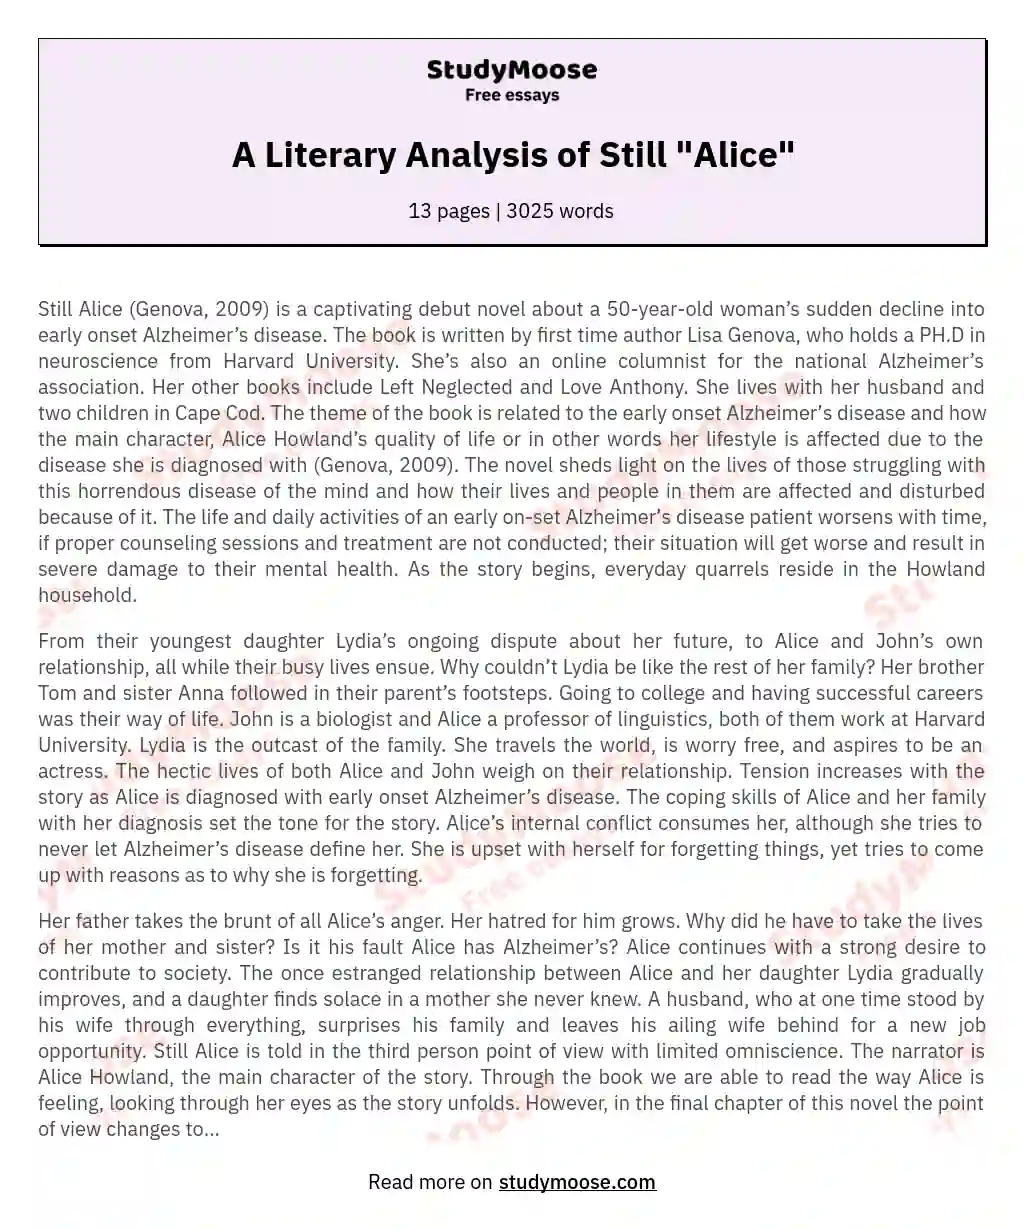 A Literary Analysis of Still "Alice" essay